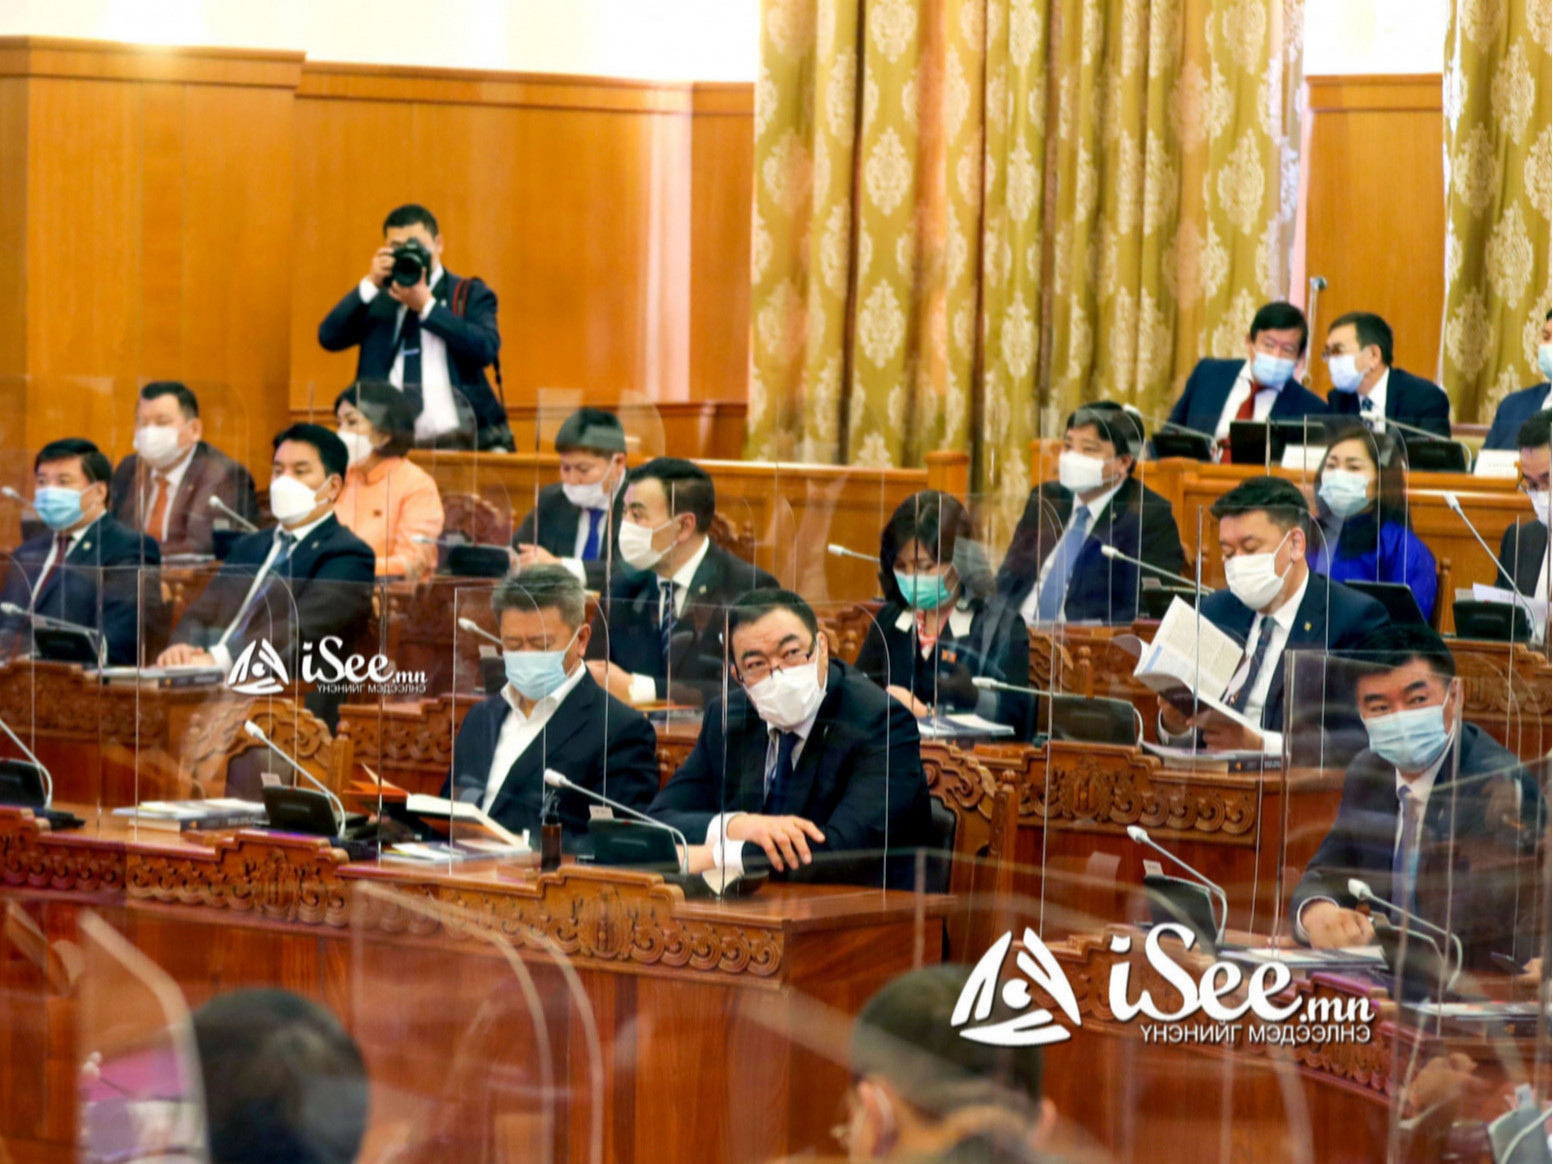 Монгол Улсын 2022 оны төсвийн тухай хуулийн төслүүдийн дөрөв дэх хэлэлцүүлгийг хийж, эцэслэн баталлаа